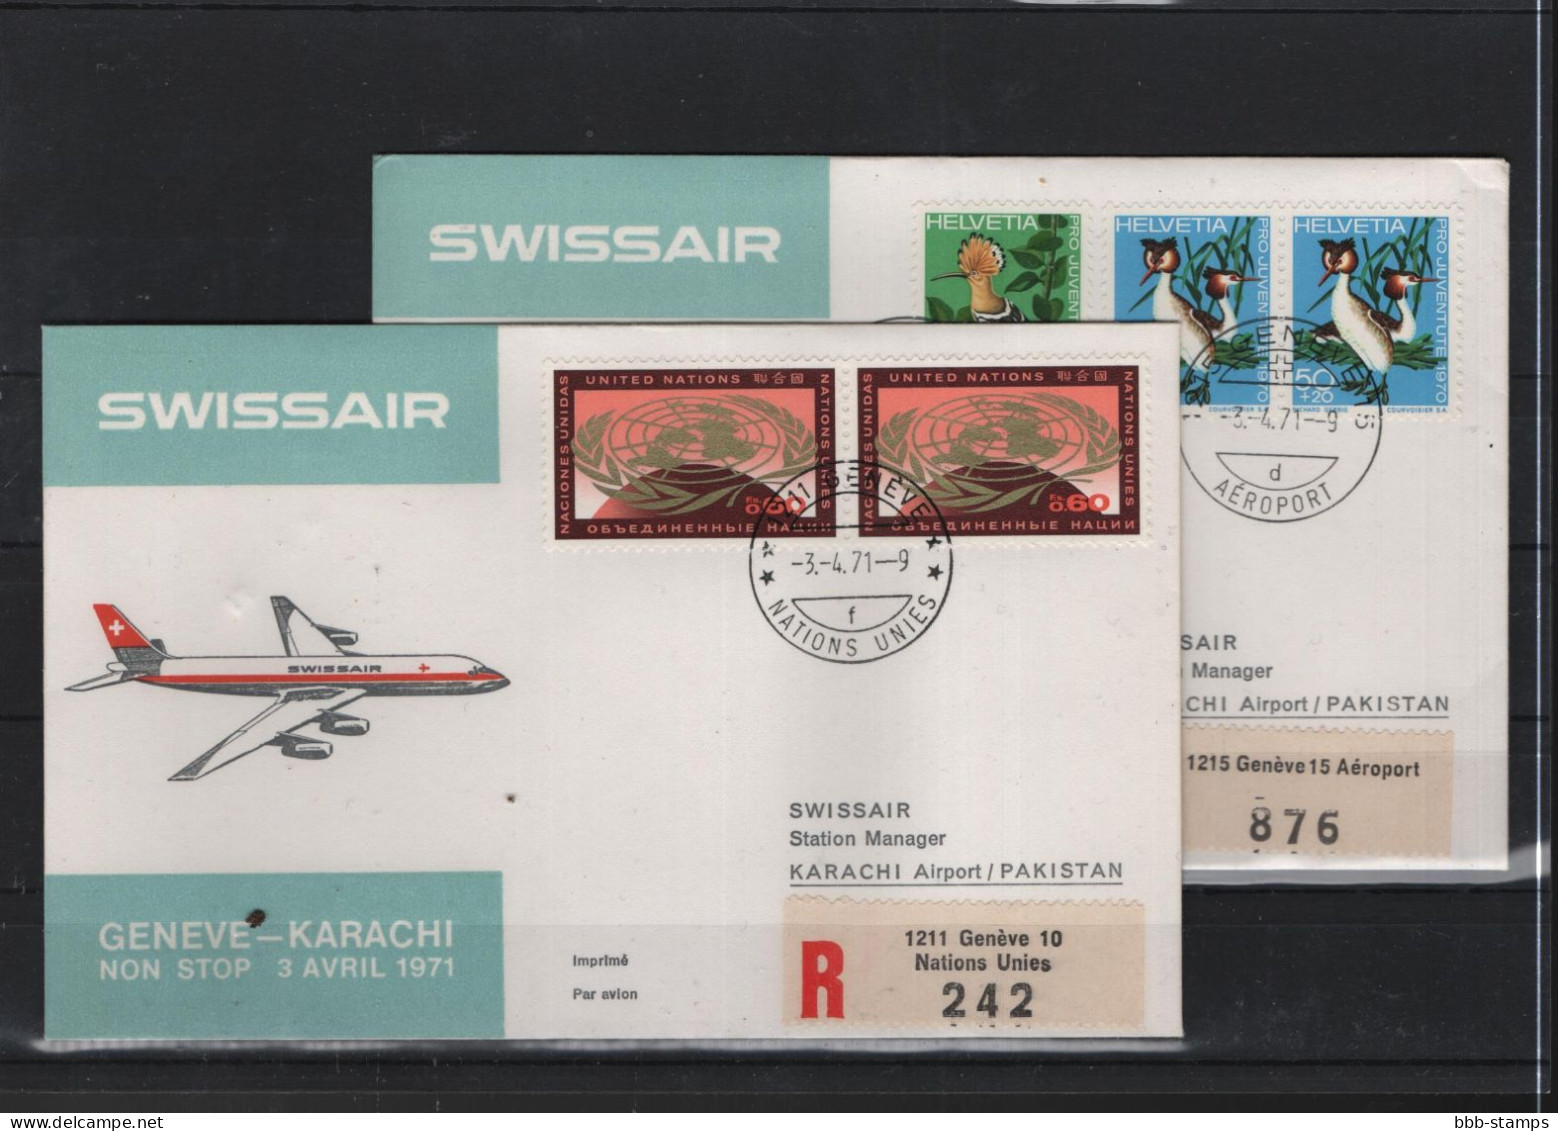 Schweiz Luftpost FFC Swissair 3.4.1971 Genf - Karachi - Premiers Vols